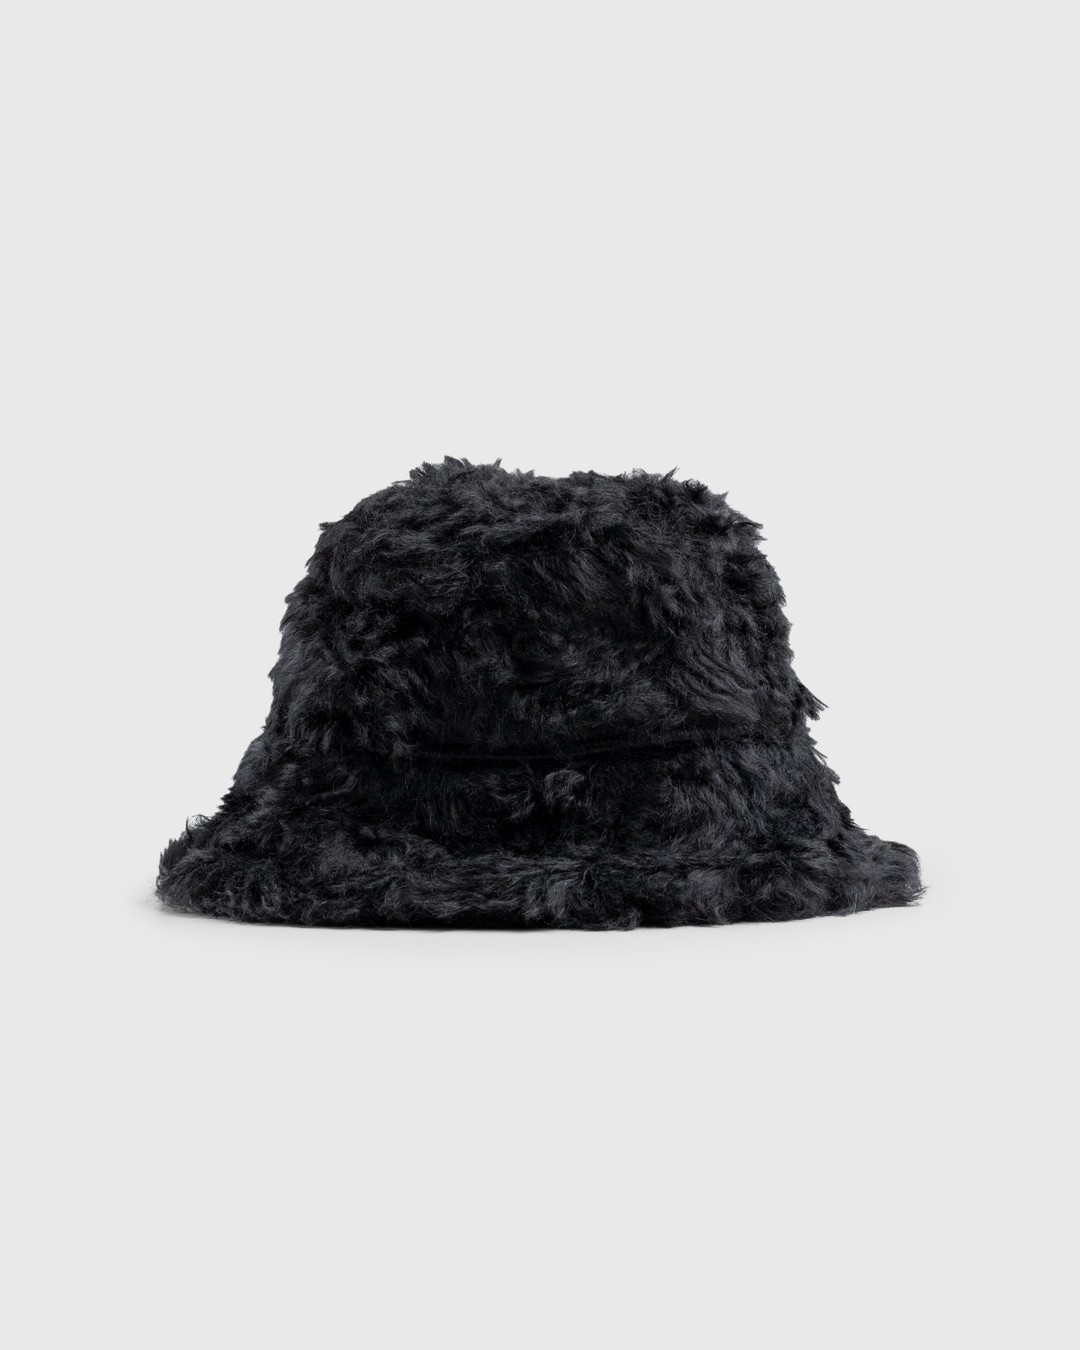 Dries van Noten – Mohair Gilly Hat Black - Bucket Hats - Black - Image 1